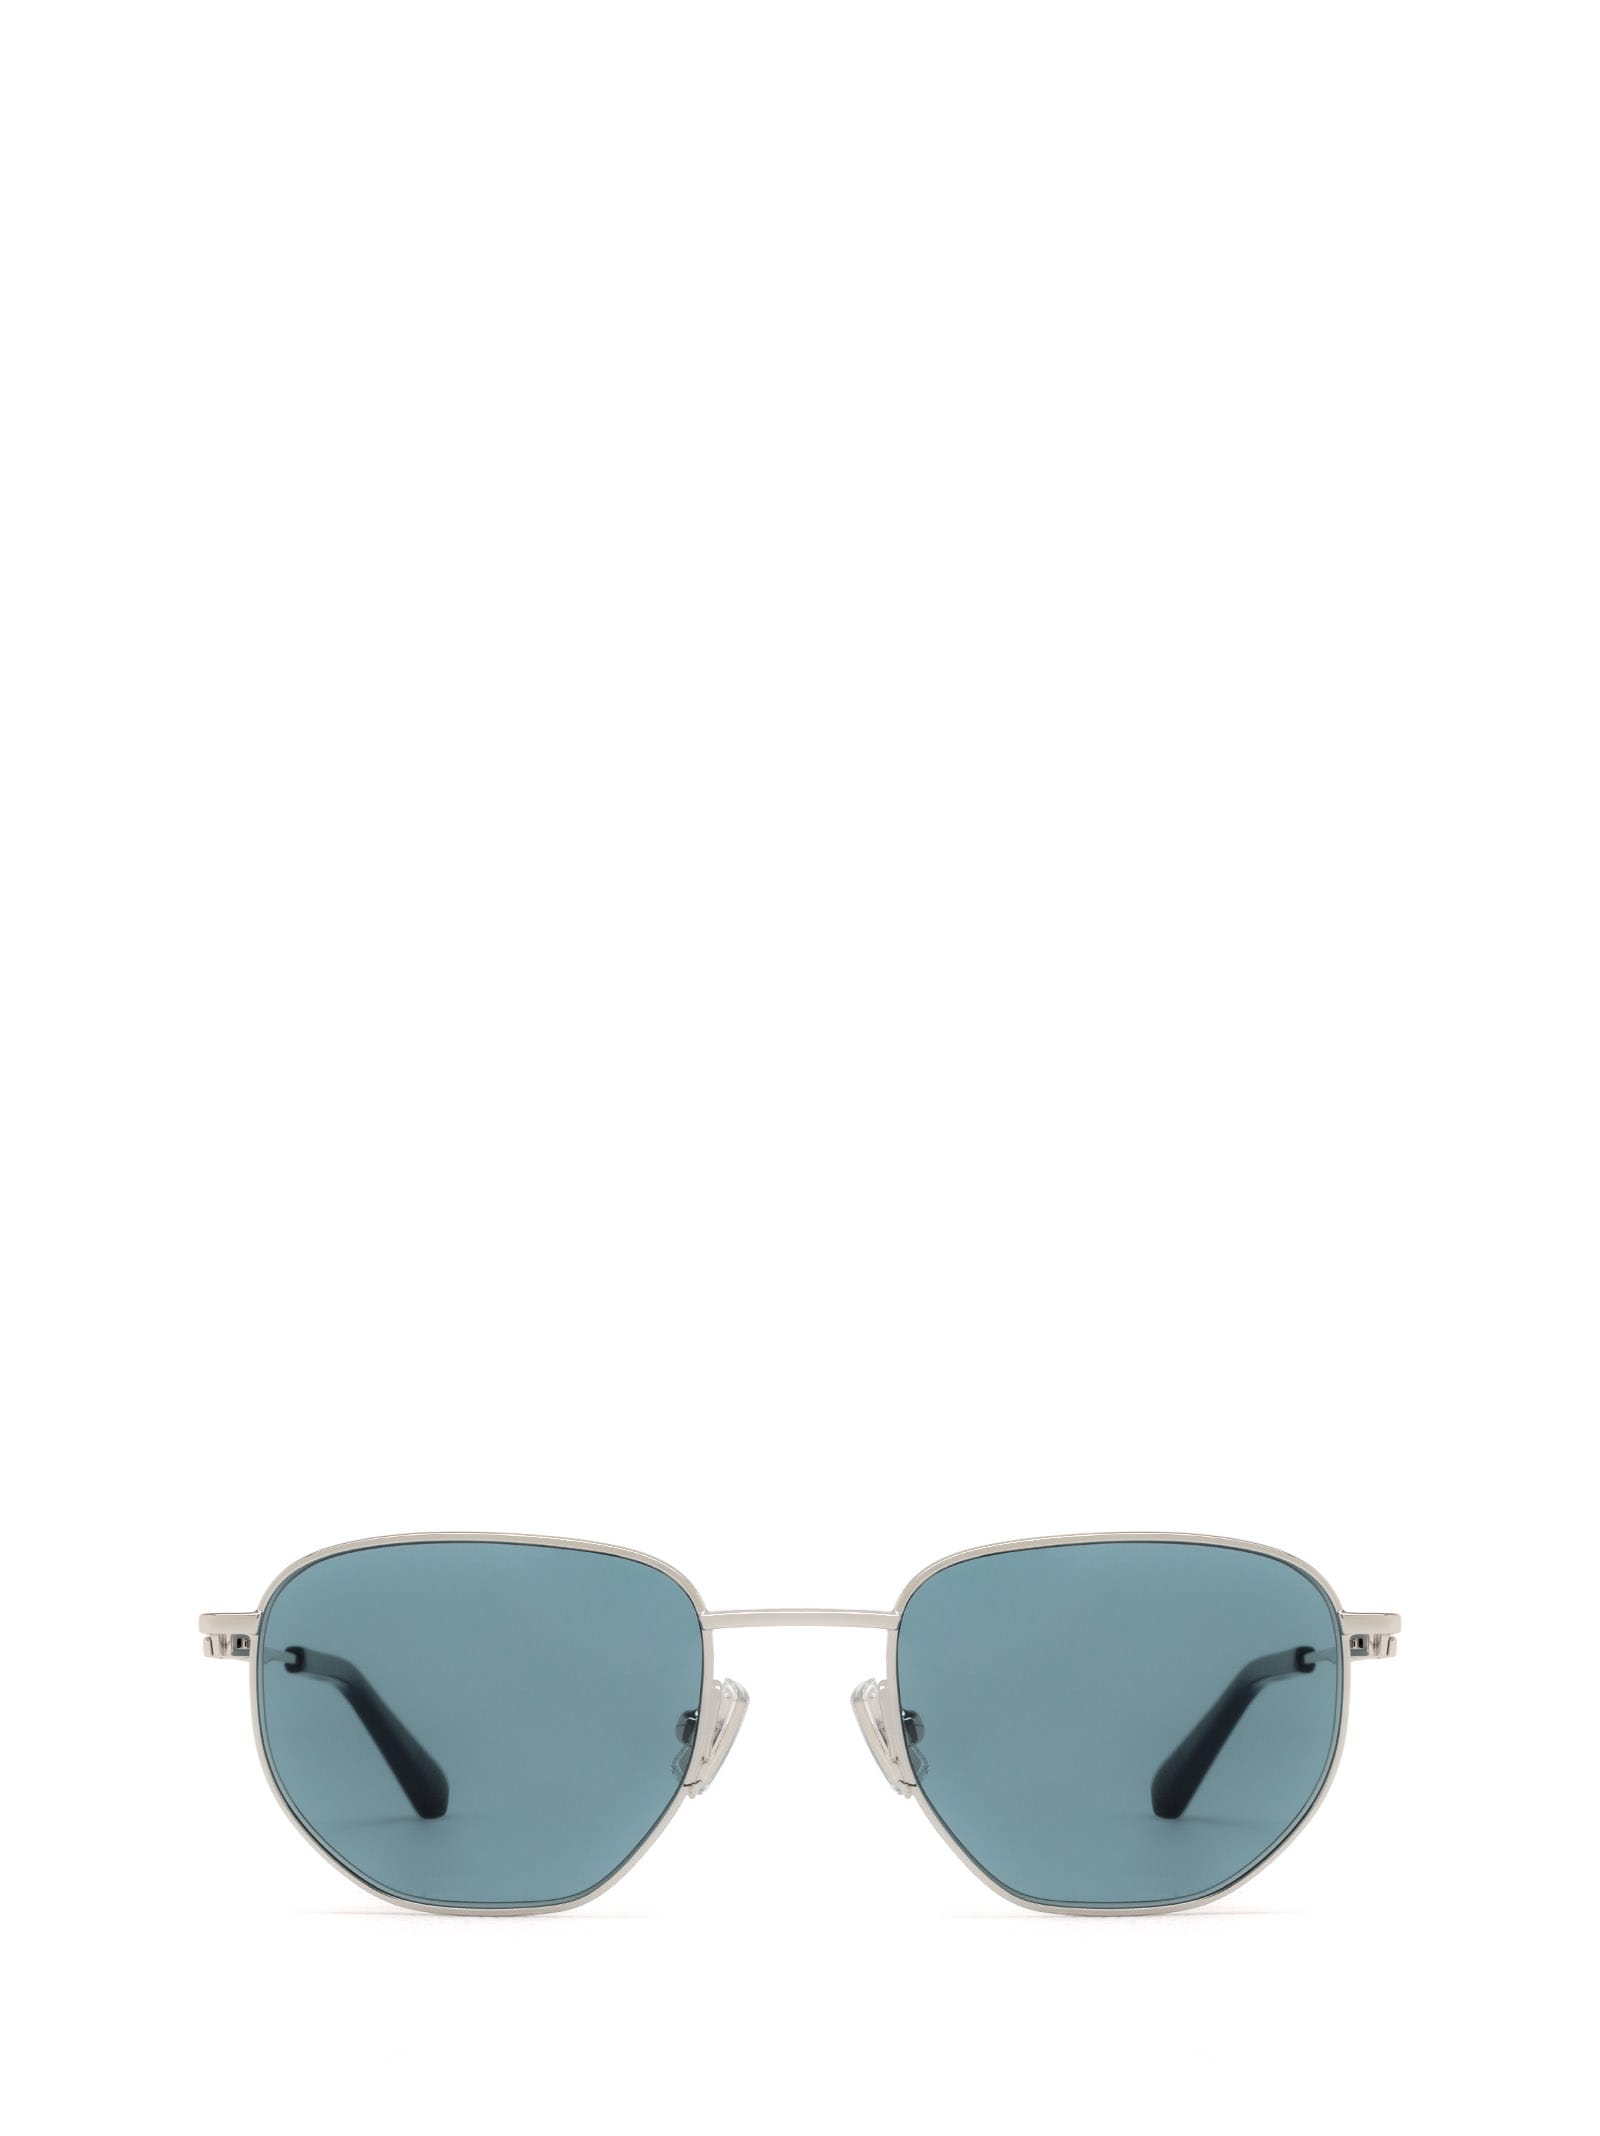 Bv1301s Silver Sunglasses